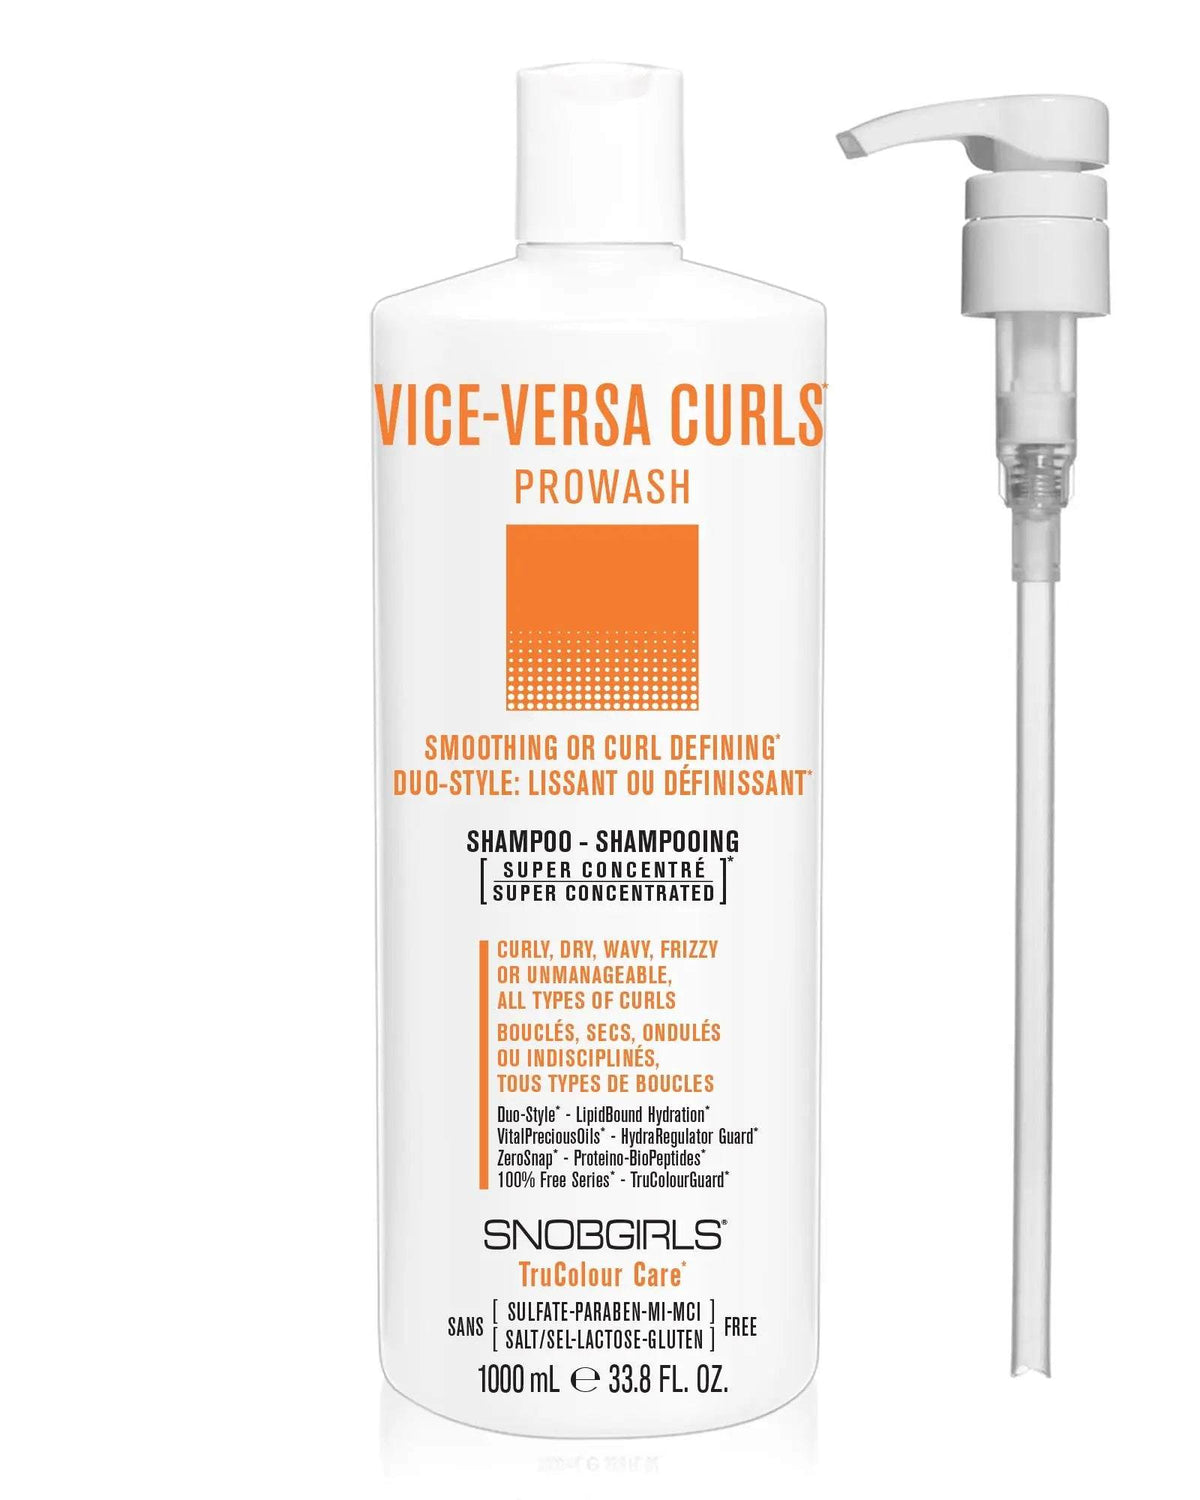 VICE-VERSA CURLS Prowash Vegan Hair Shampoo &amp; Pump